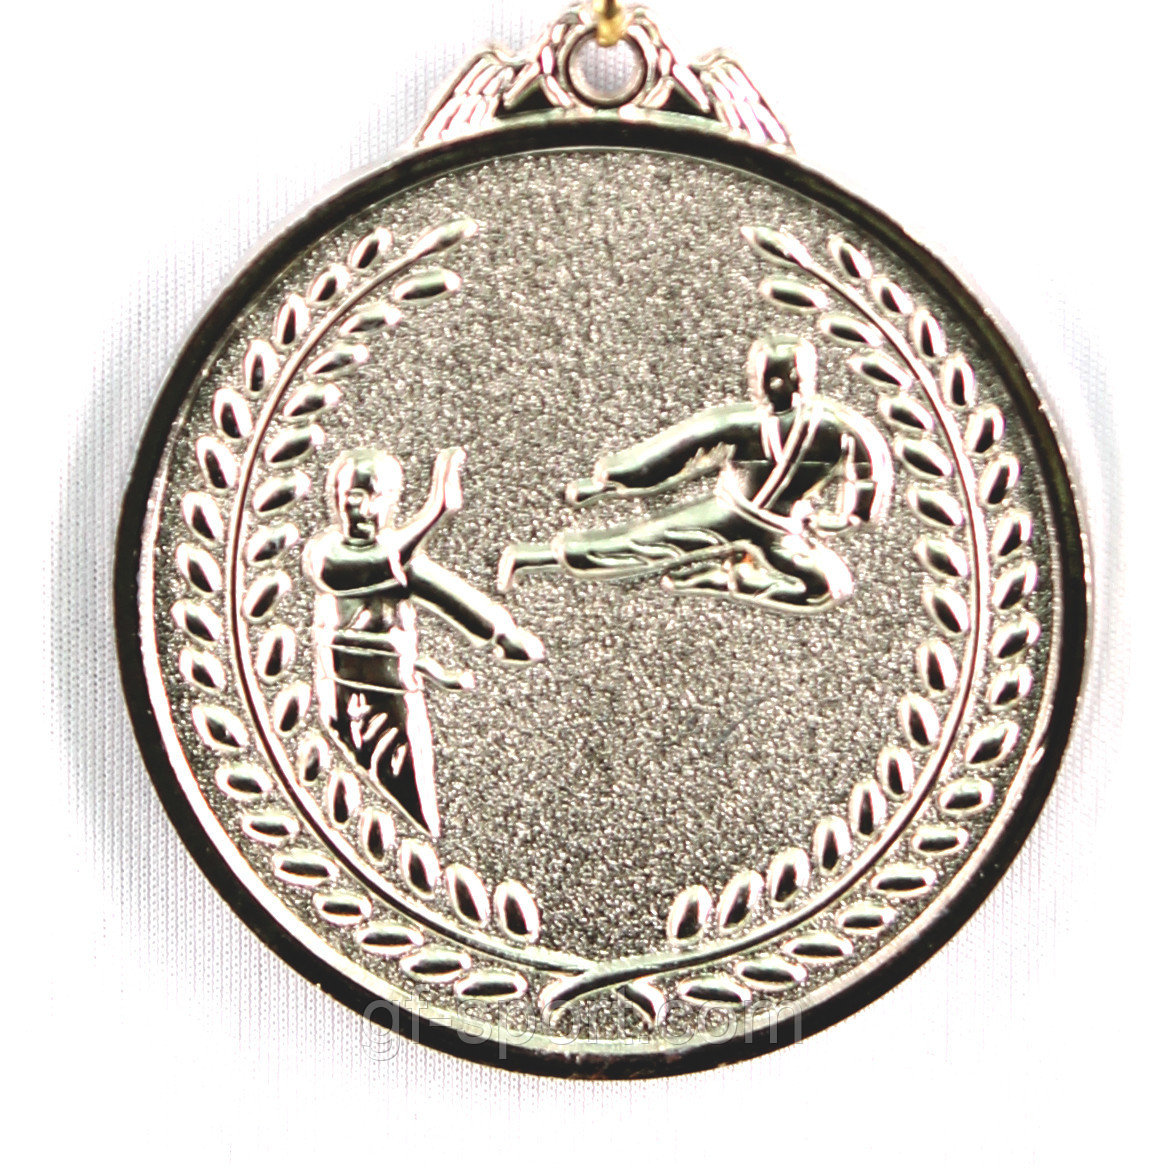 Медаль КАРАТЕ (серебро)